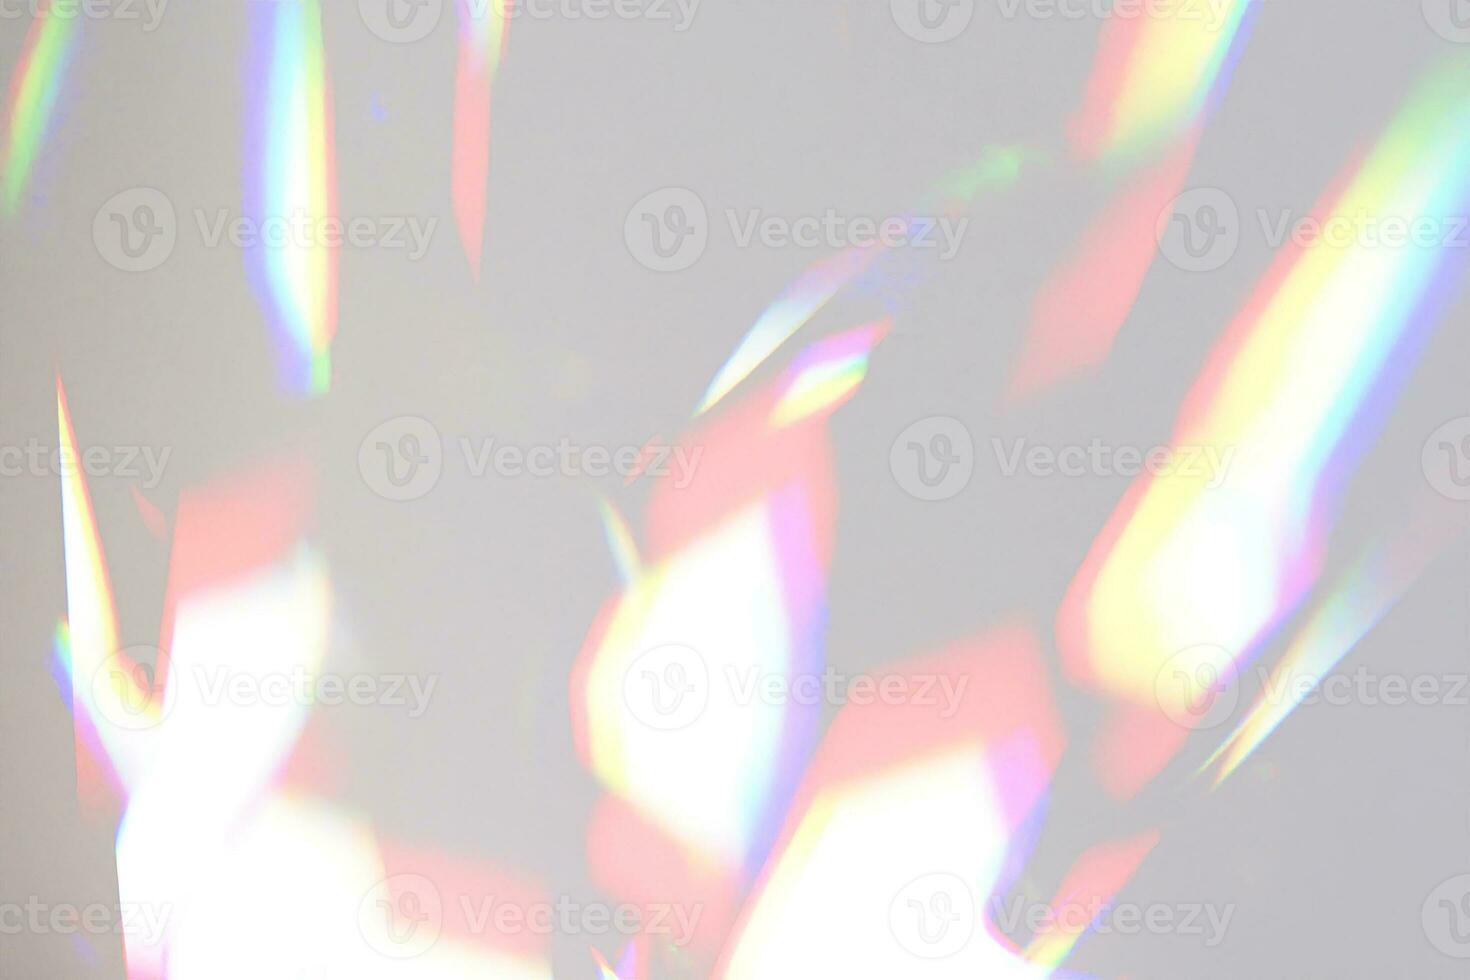 luz raios prisma arco Iris refração luz fundo sobreposição foto